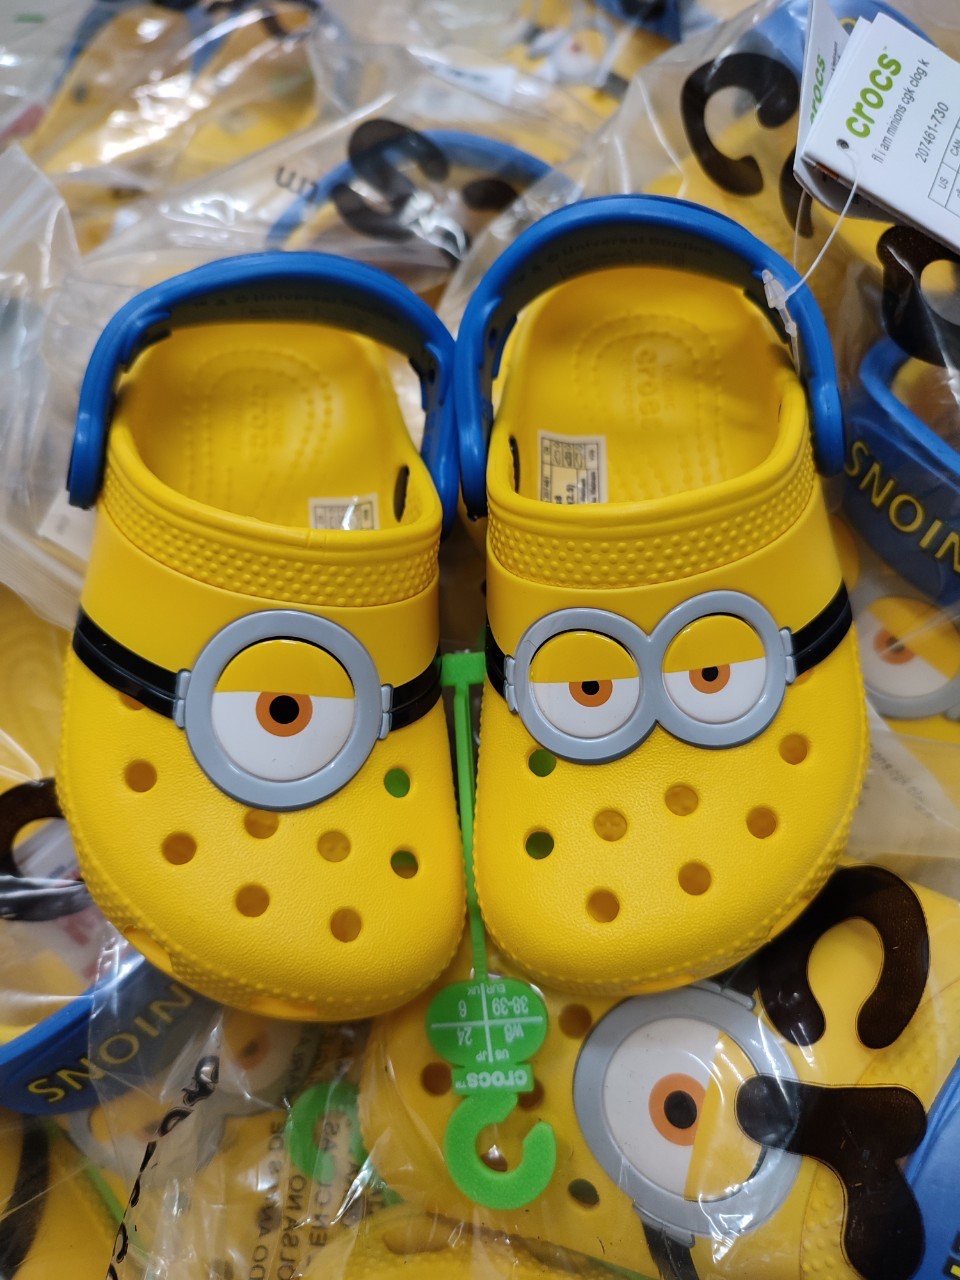 Sục Crocs Minion Funlab Clog Kids màu vàng